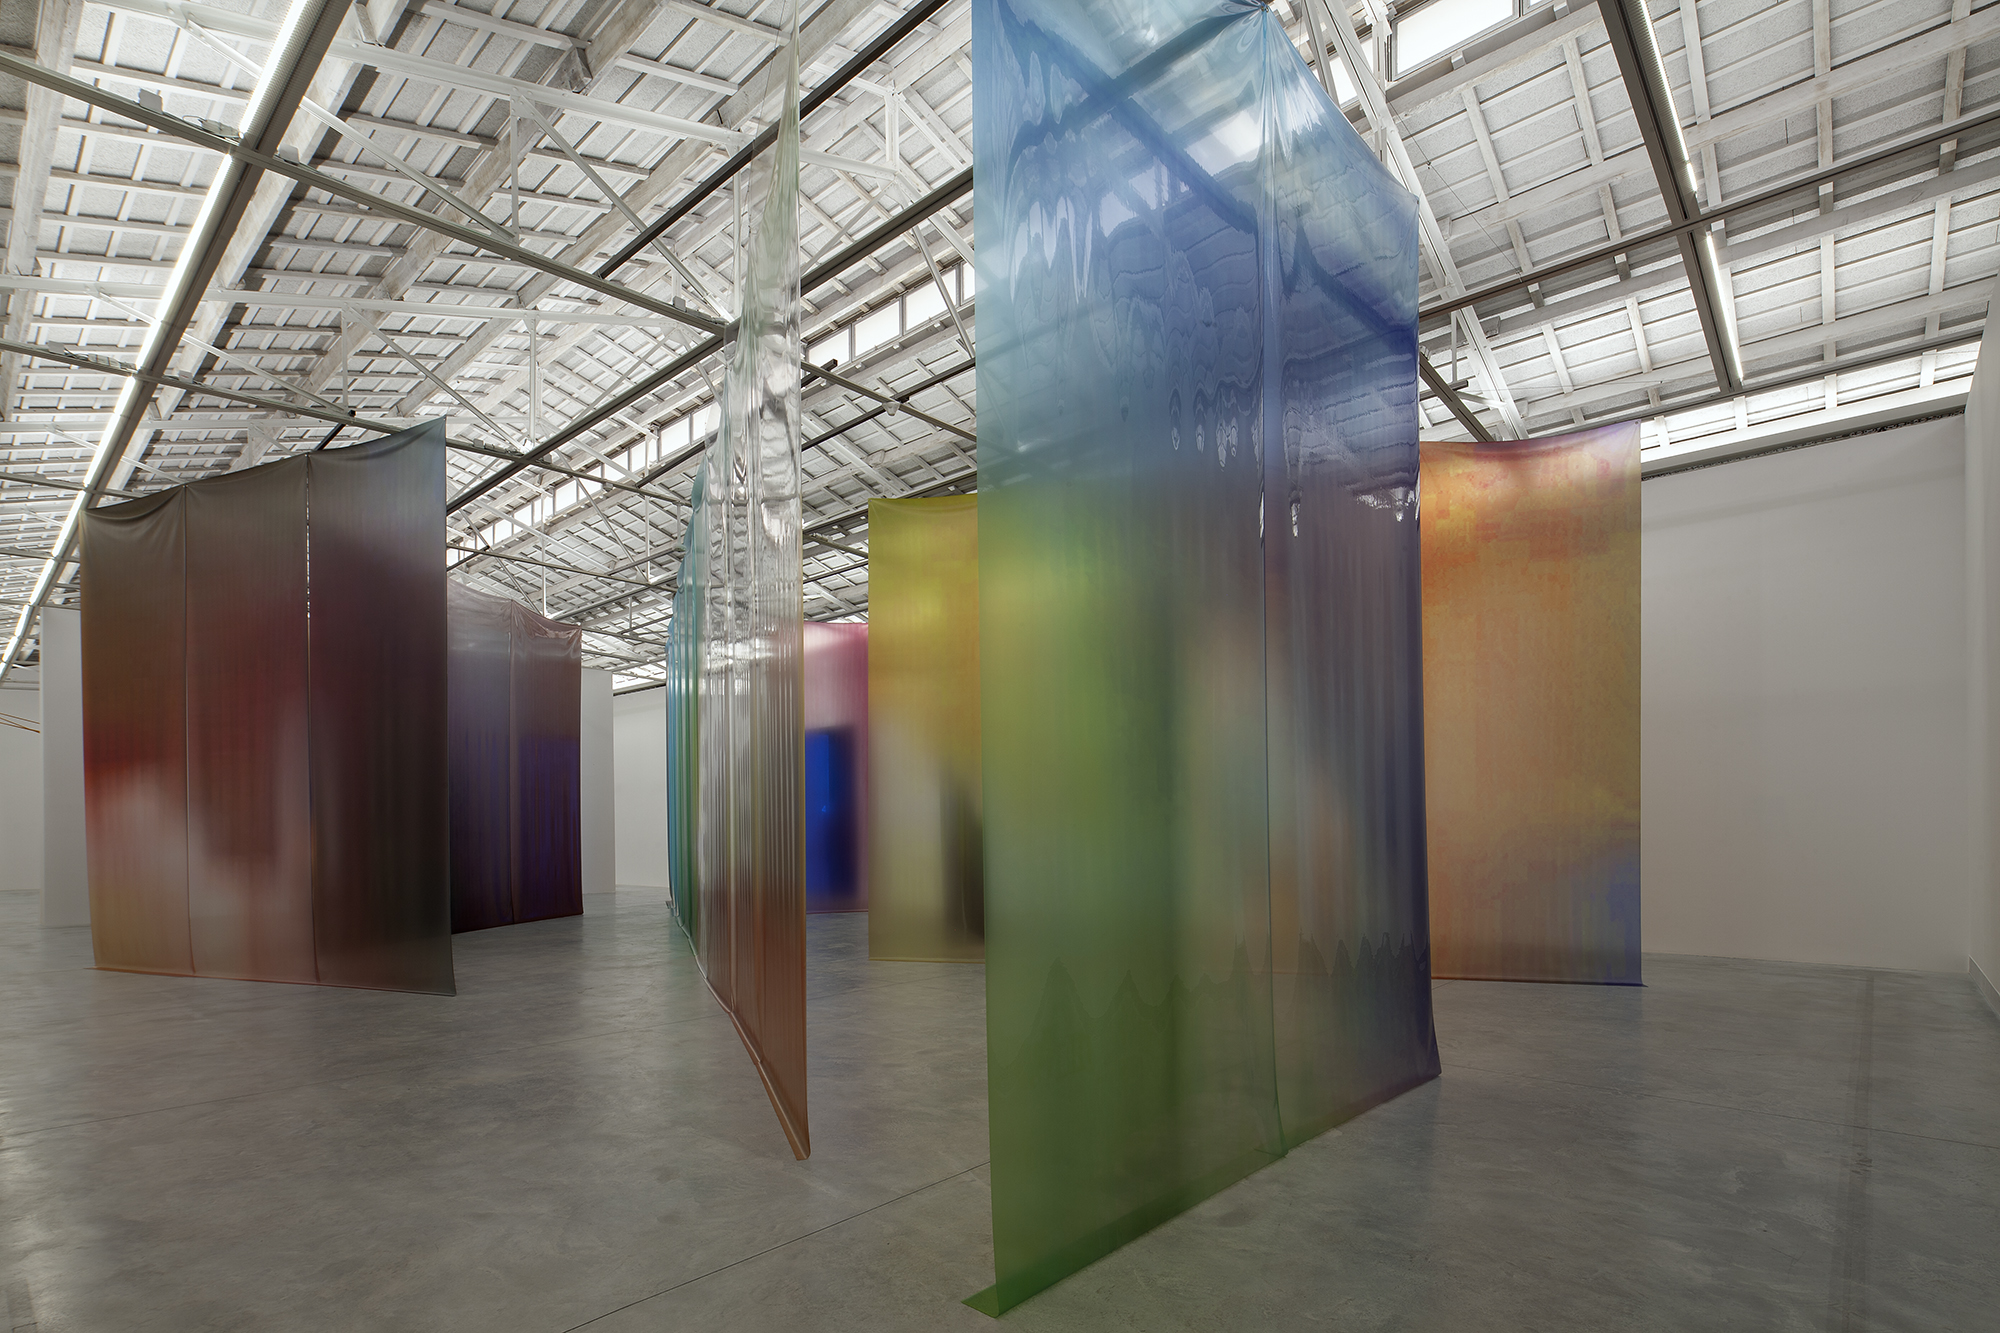 Obra de "Infraleve" plásticos transparentes tintados de colores